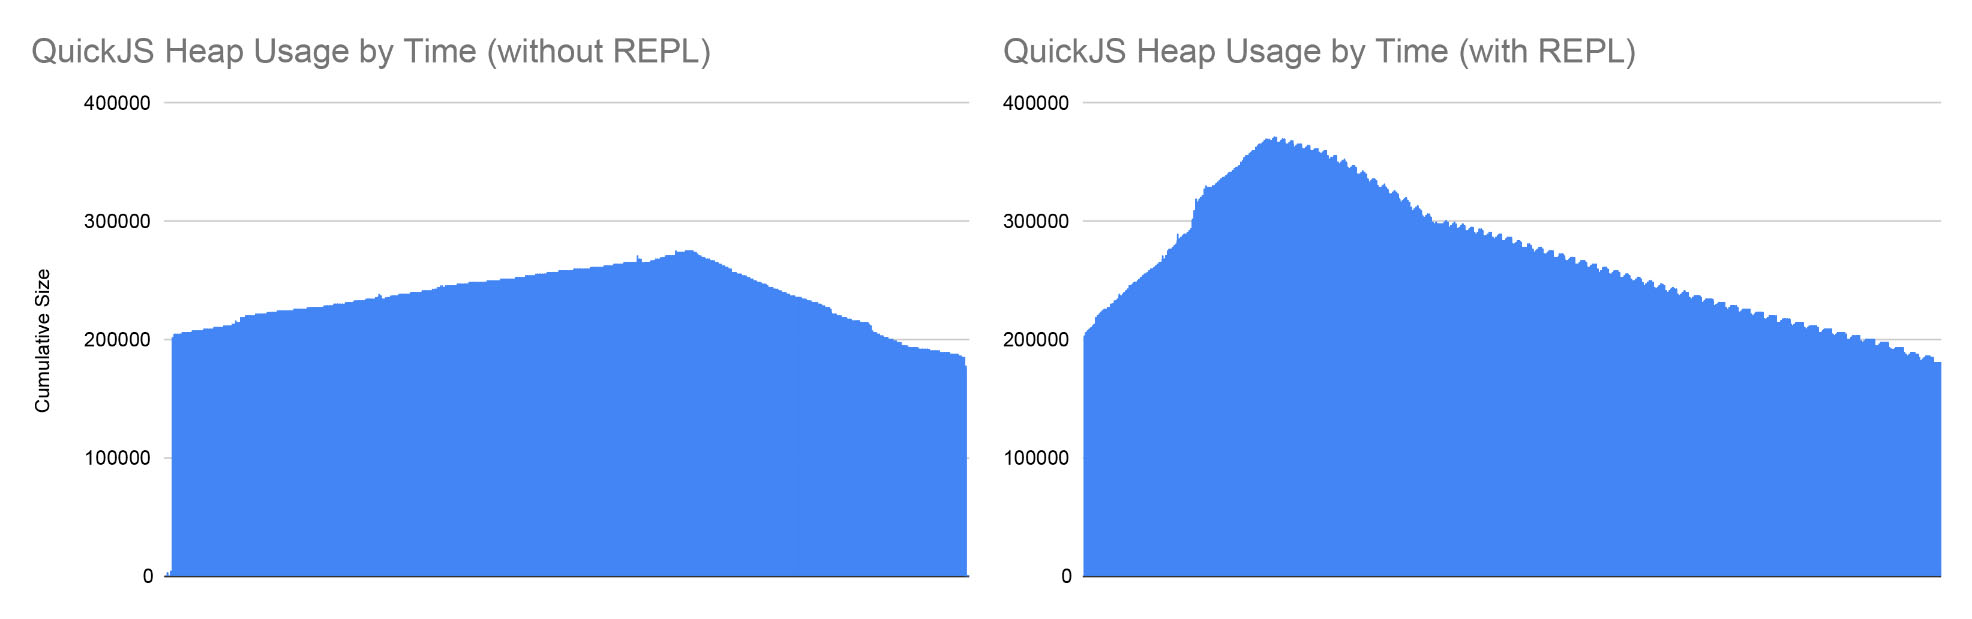 QuickJS Heap Usage